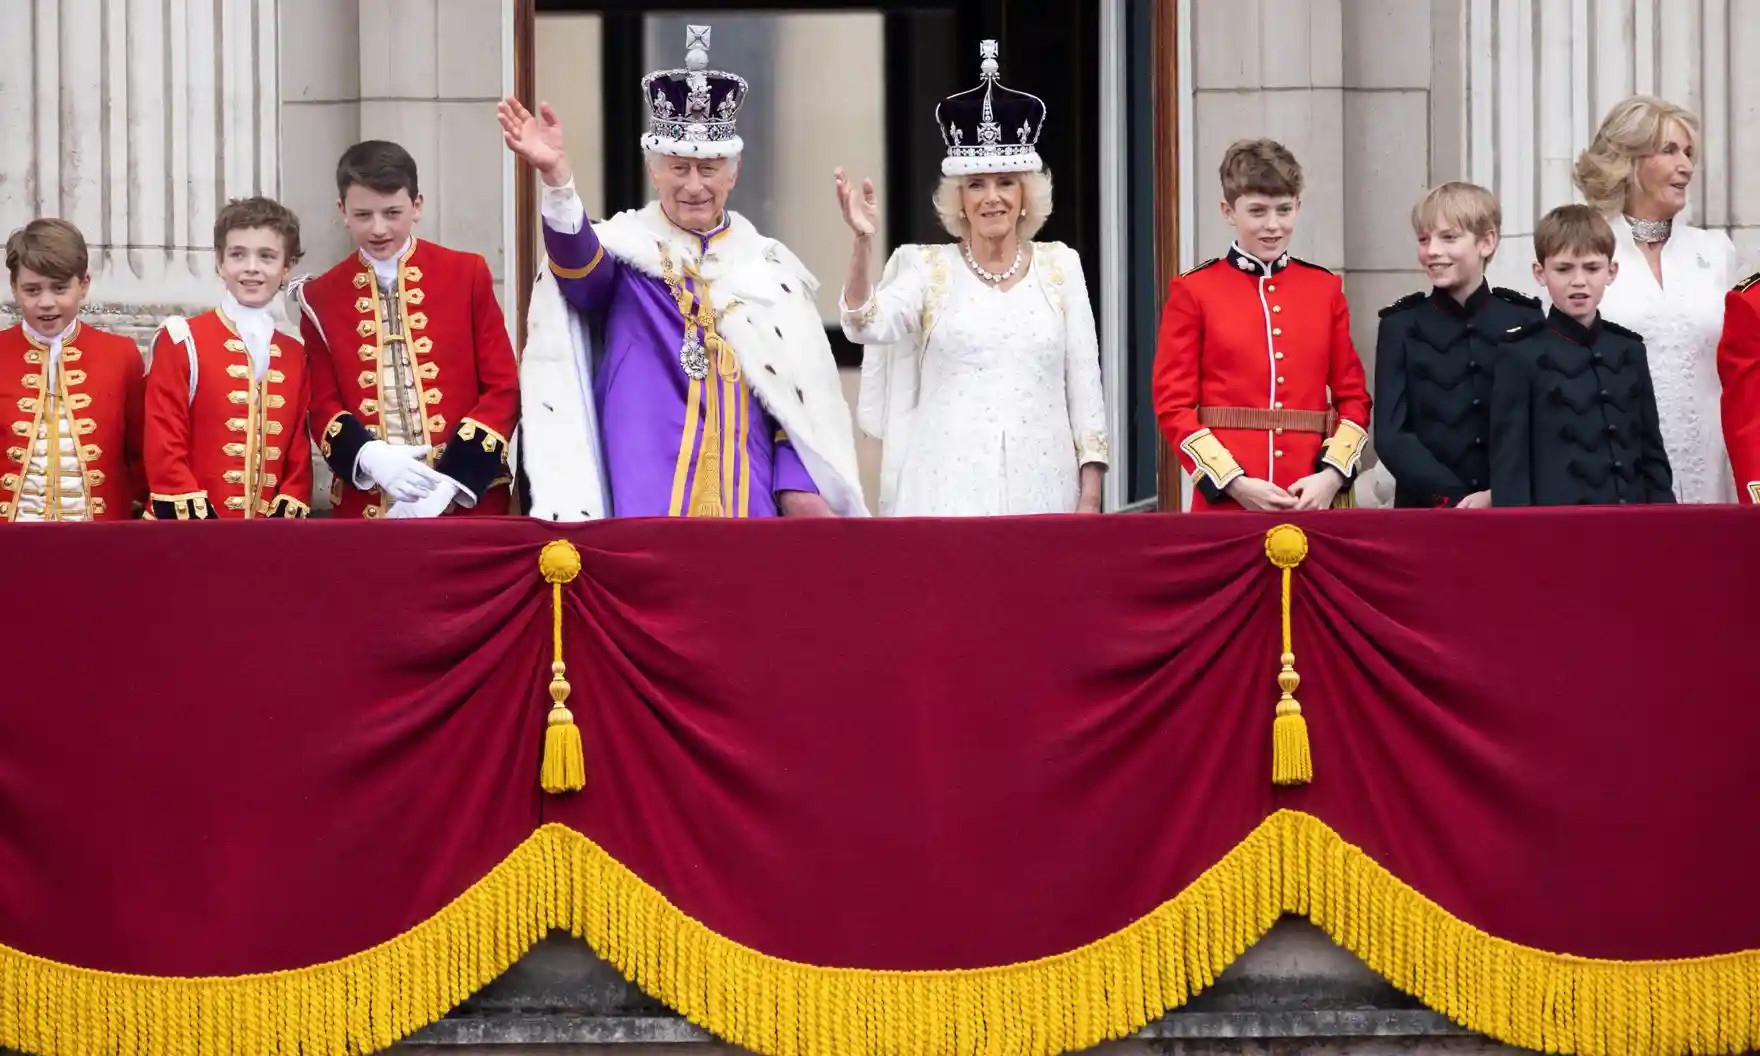 lễ đăng quang của Vua Charles III được tổ chức long trọng tại Tu viện Westminster ở Luân Đôn, với sự tham sự của 2.300 khách mời, trong đó có khoảng một trăm quan khách là các vị nguyên thủ quốc gia, đại diện của các hoàng gia ở nước ngoài, của khối Thịnh Vượng Chung, cũng như các nhân vật nổi tiếng